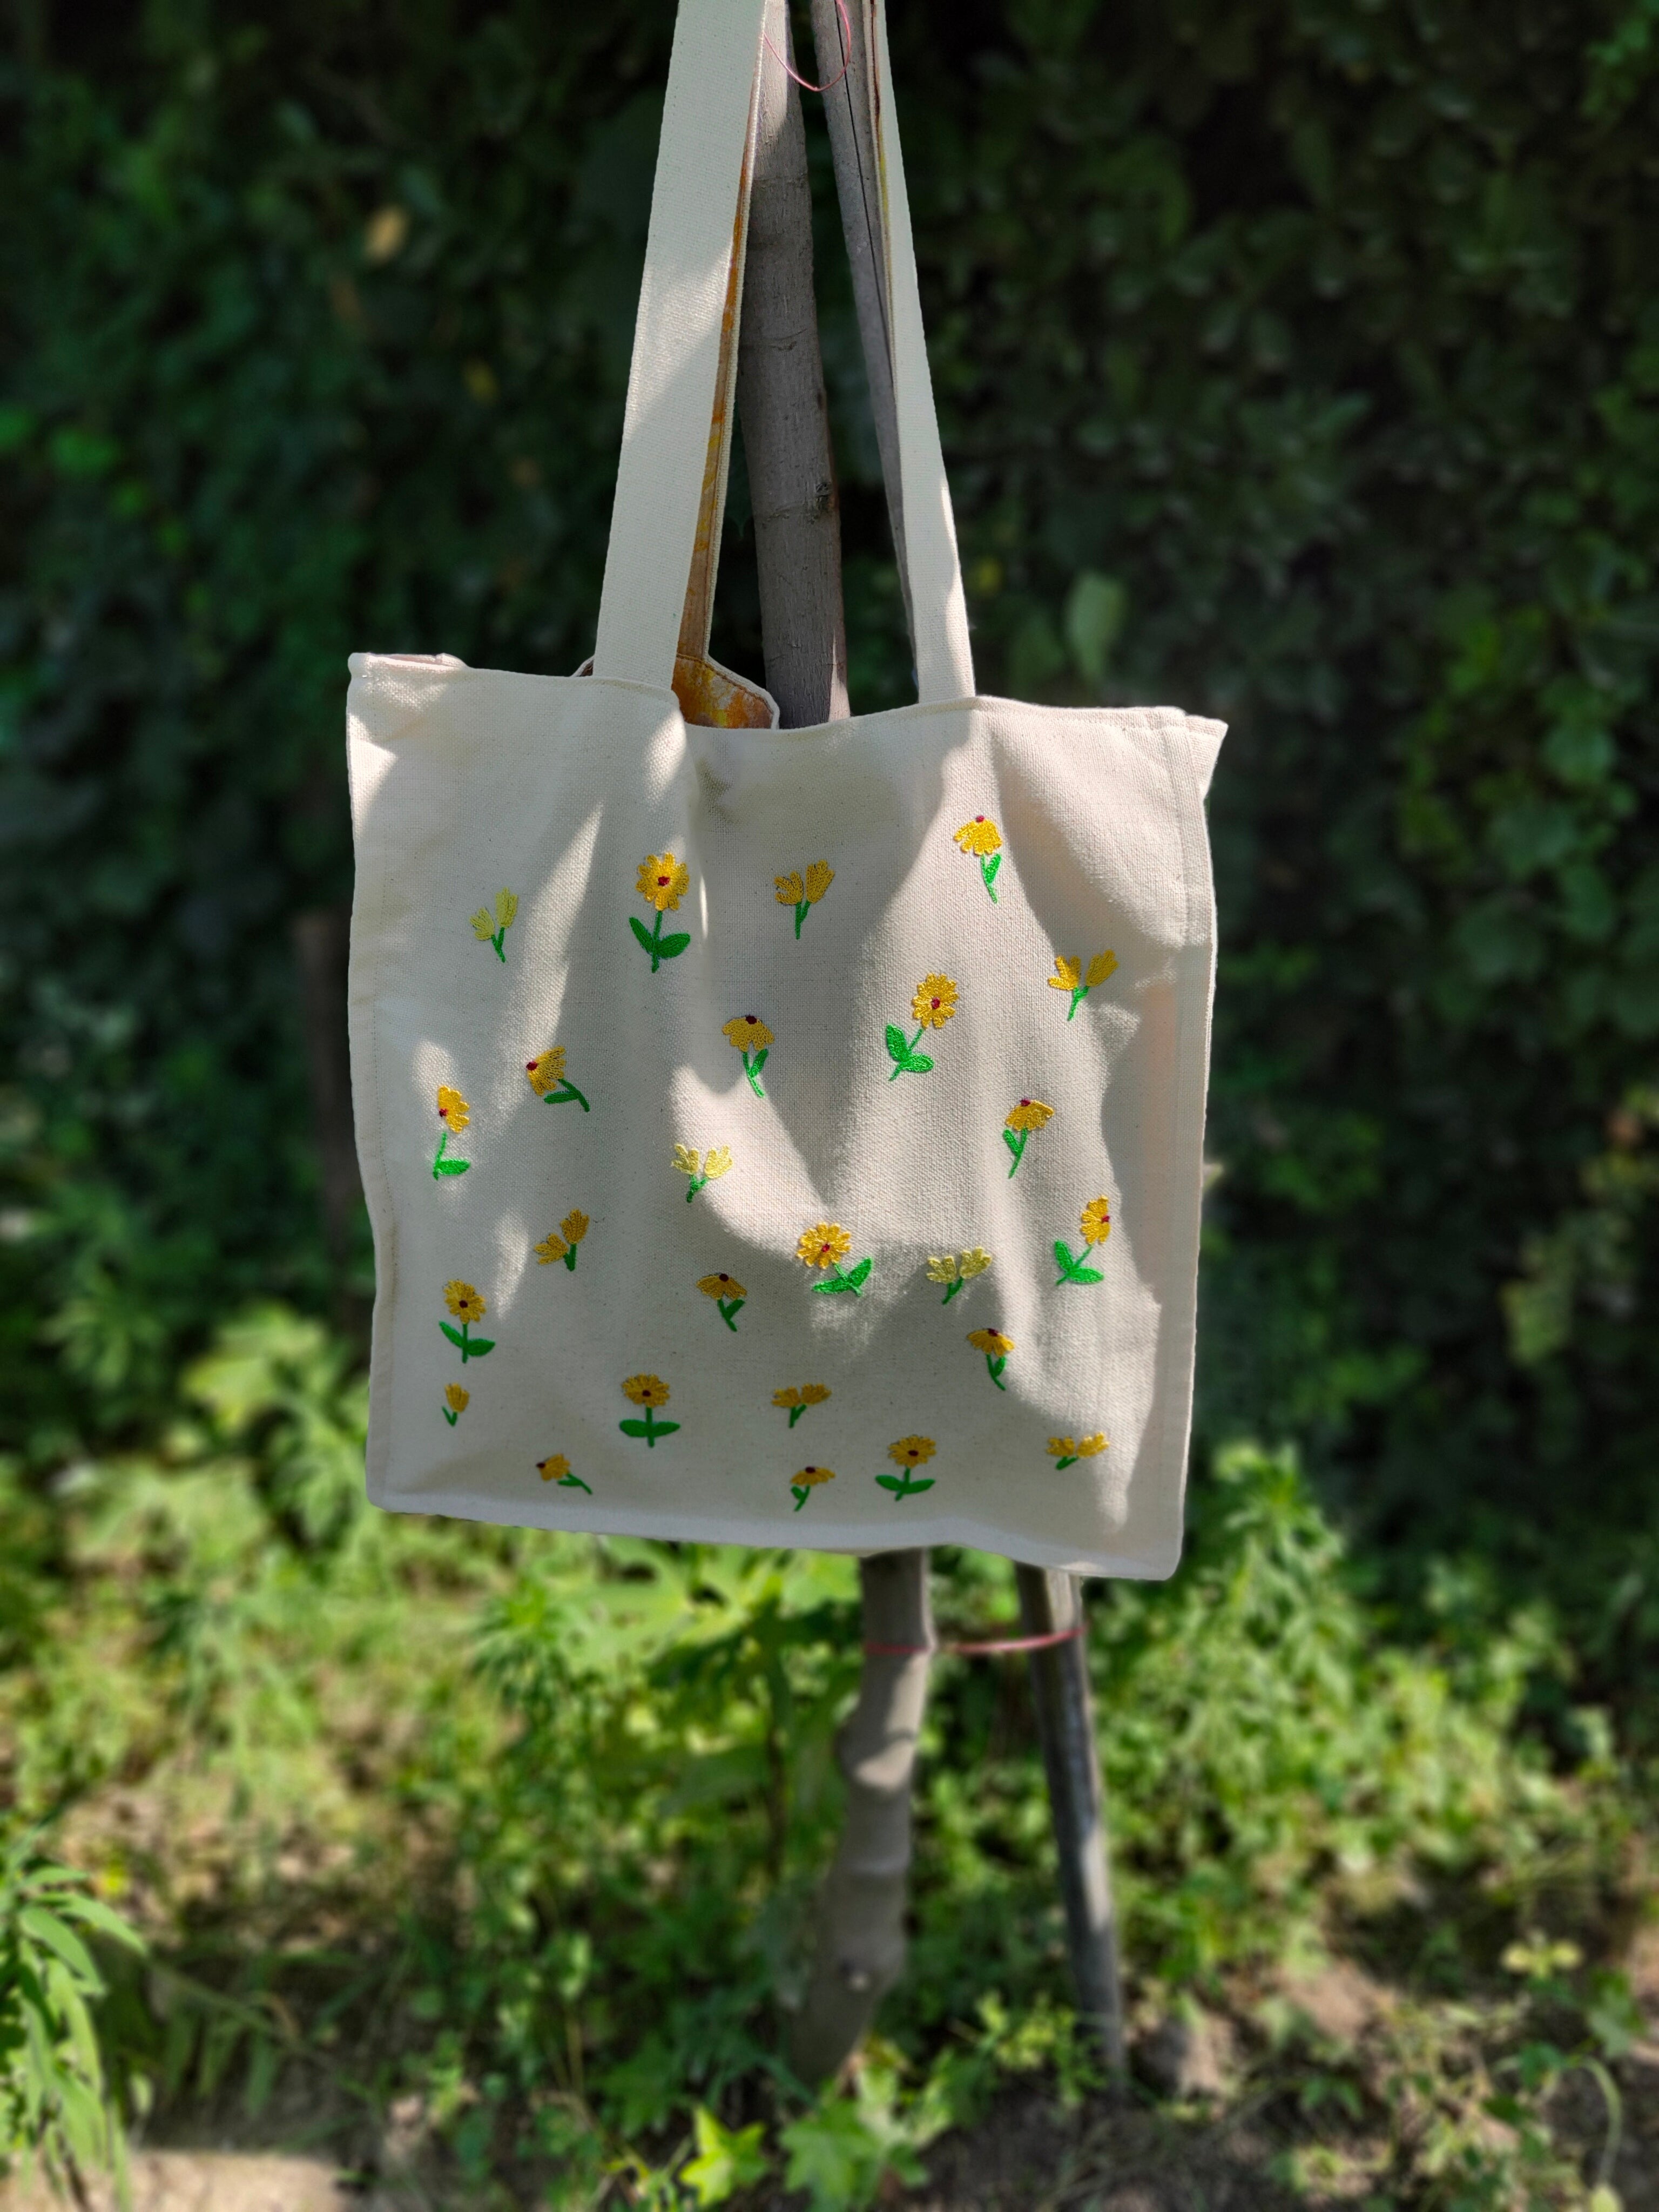 Hand-embroidered Posh Bag